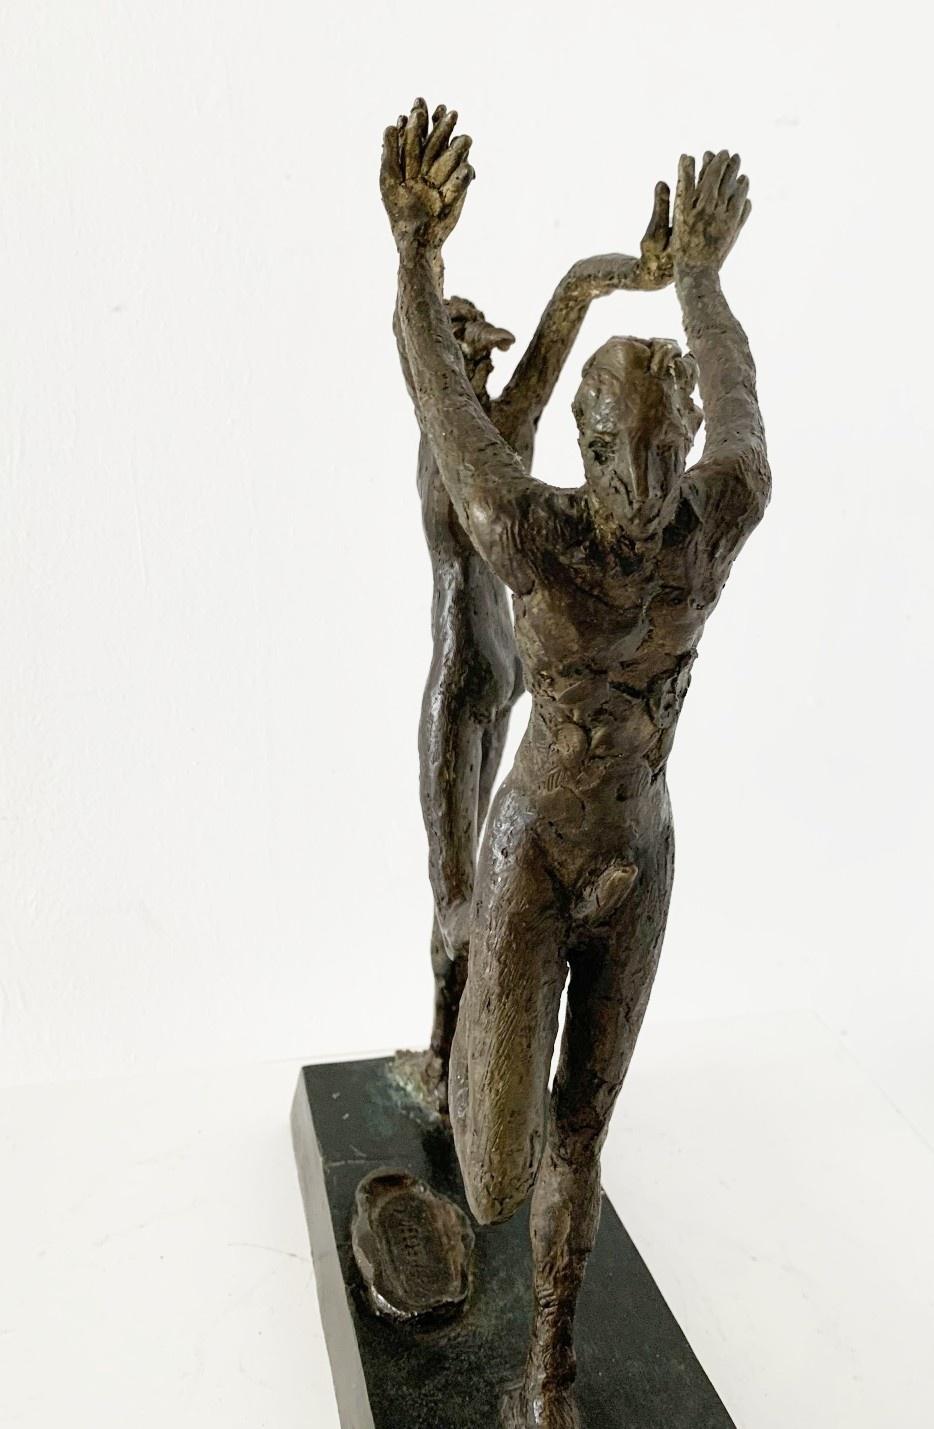 Gemeinsam tanzen. Zeitgenössische figurative Bronzeskulptur, italienischer Künstler – Sculpture von Giuseppe del Debbio